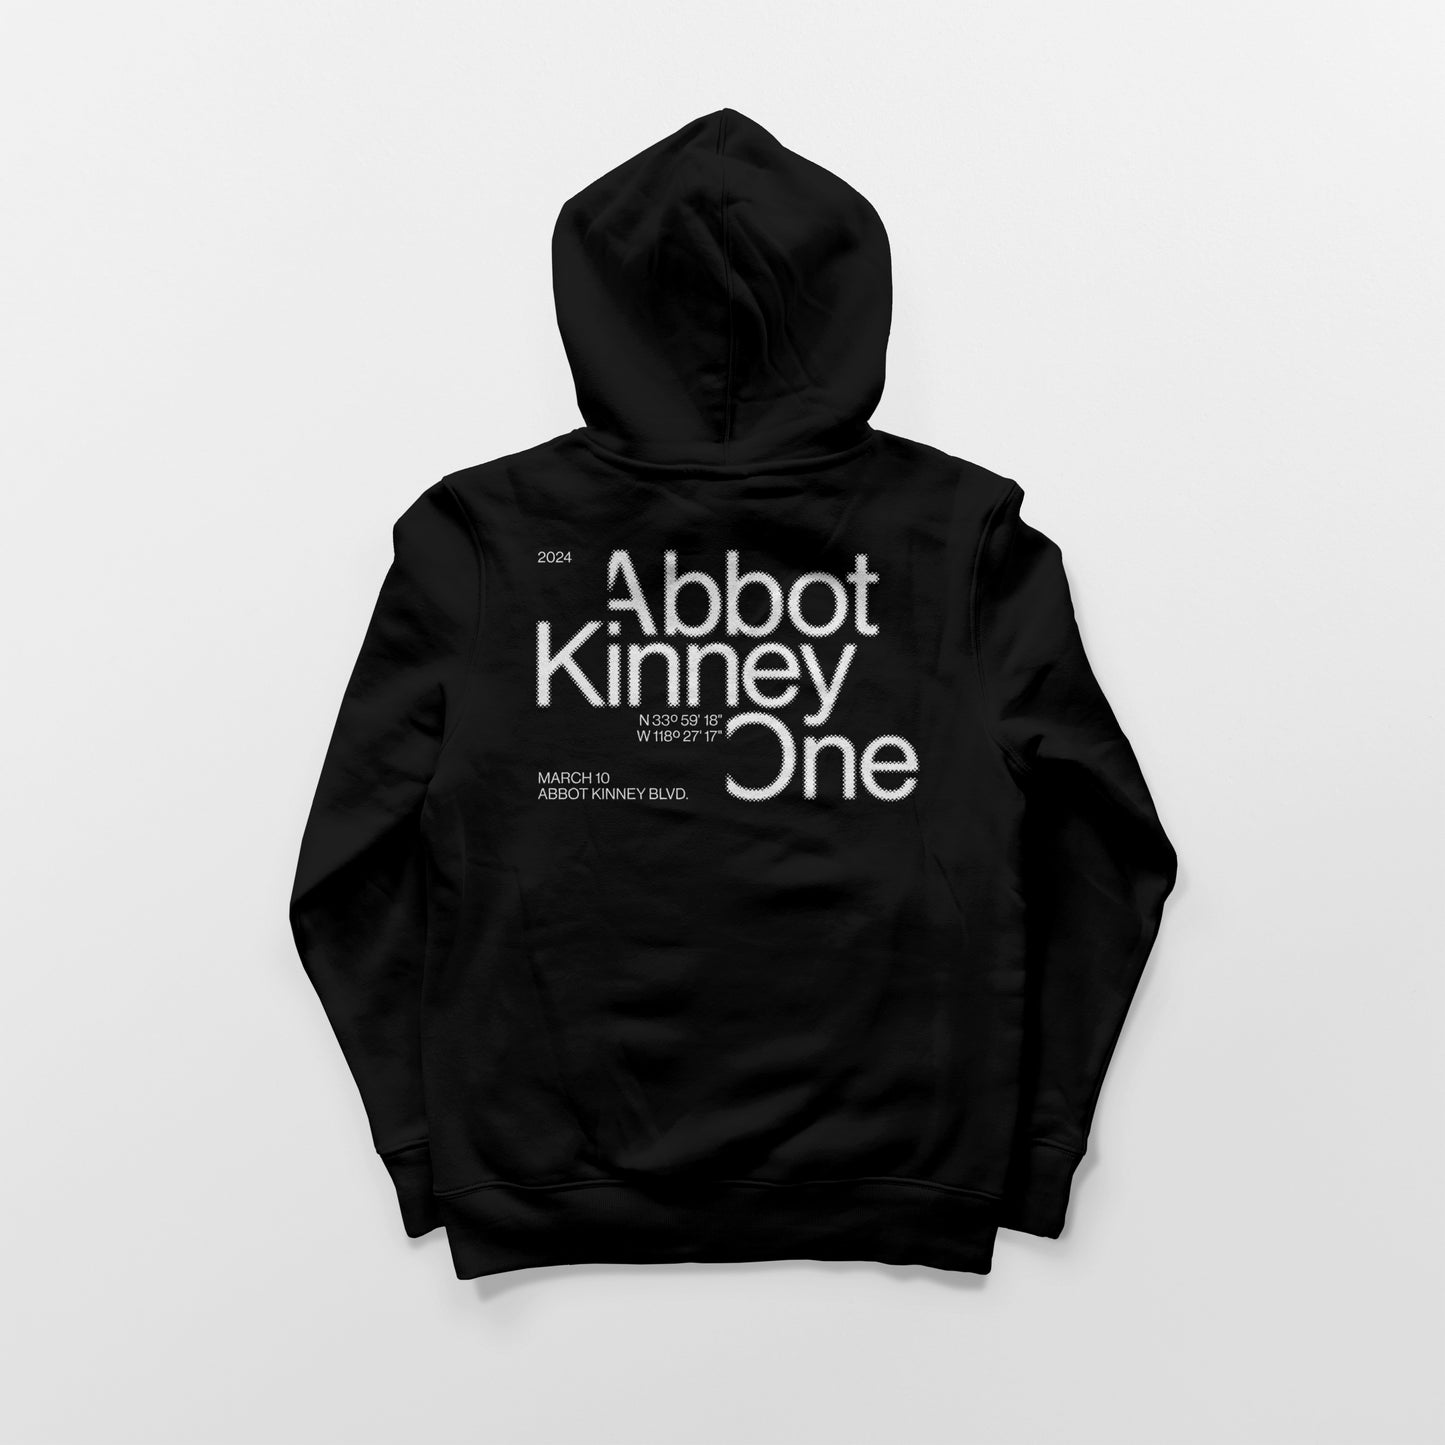 Abbot Kinney One - Black Hoodie